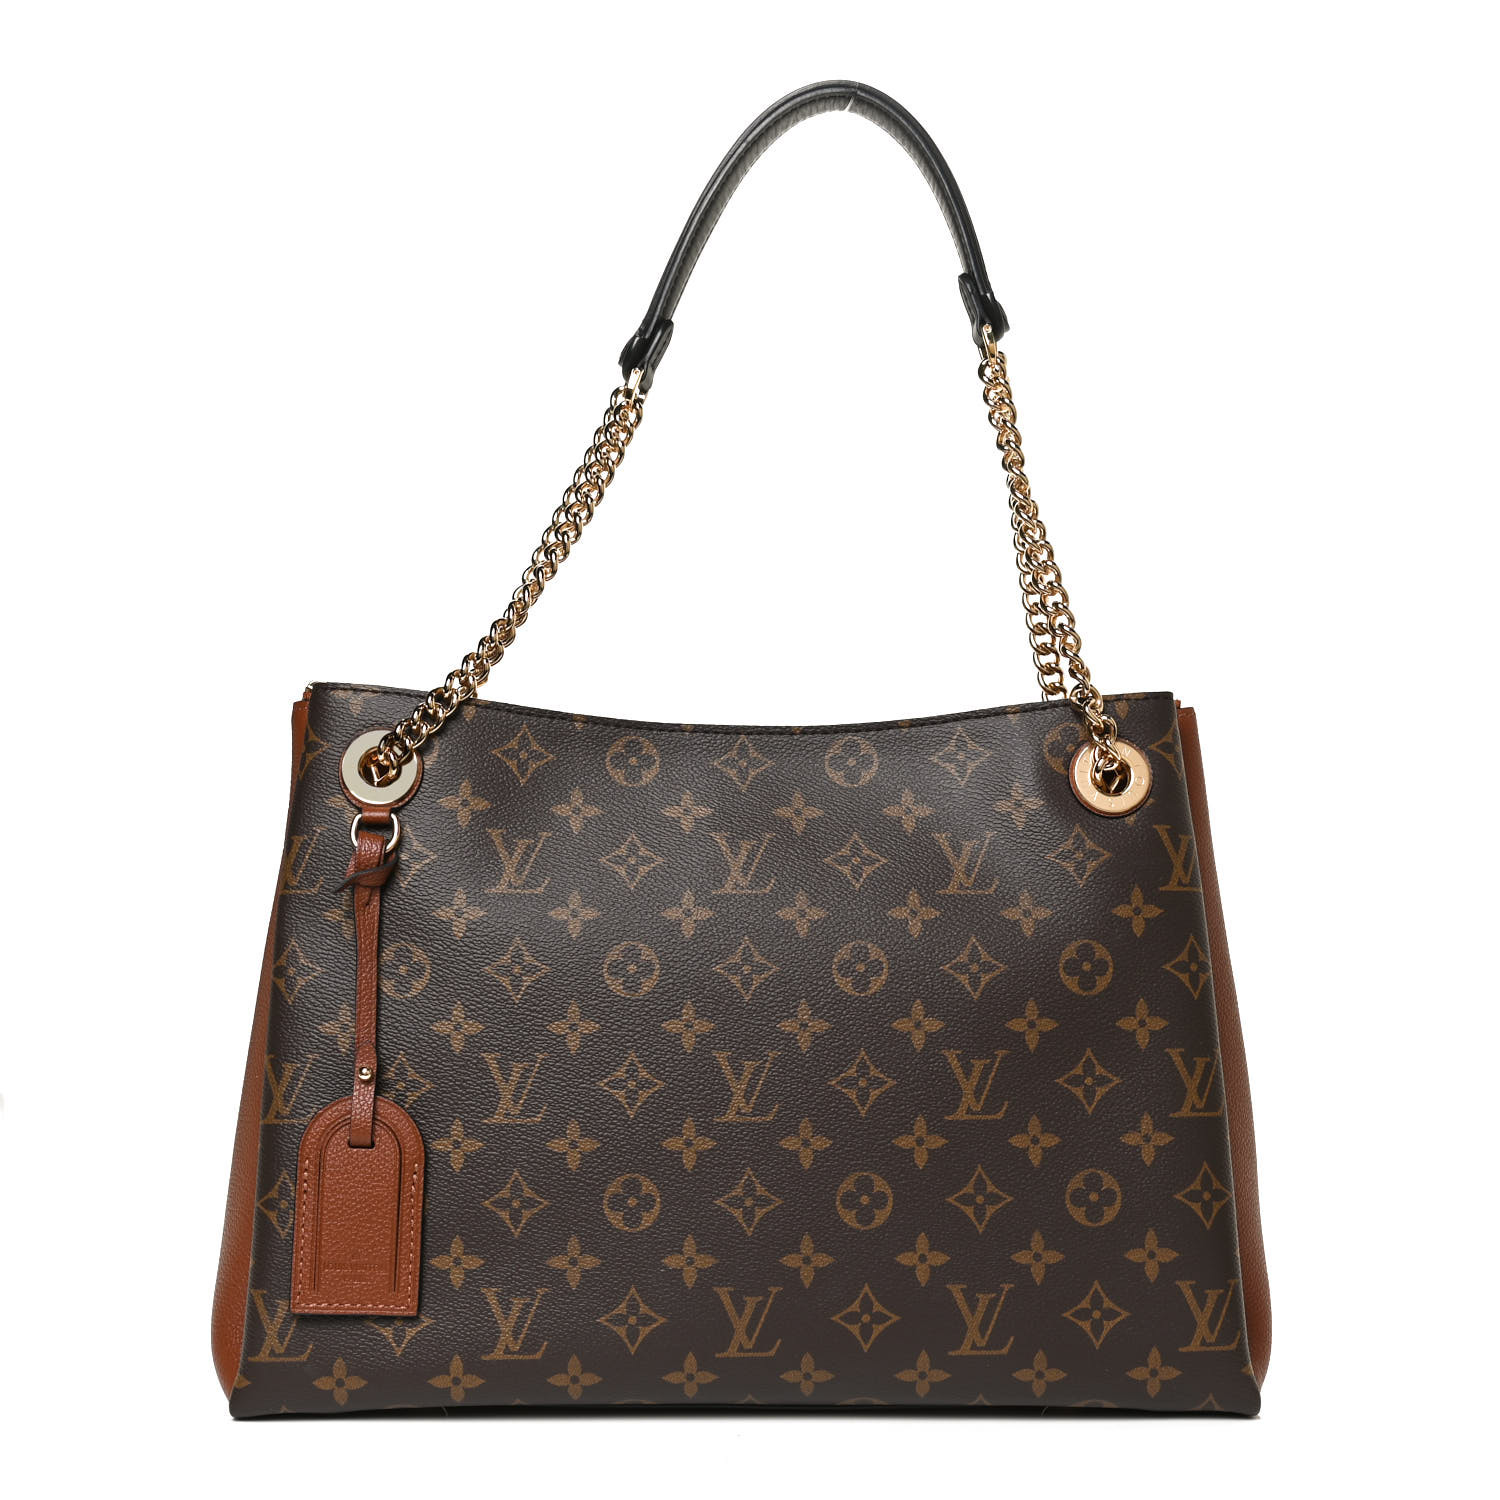 Outlet Store Louis Vuitton – Cheap Louis Vuitton Bags For Sale